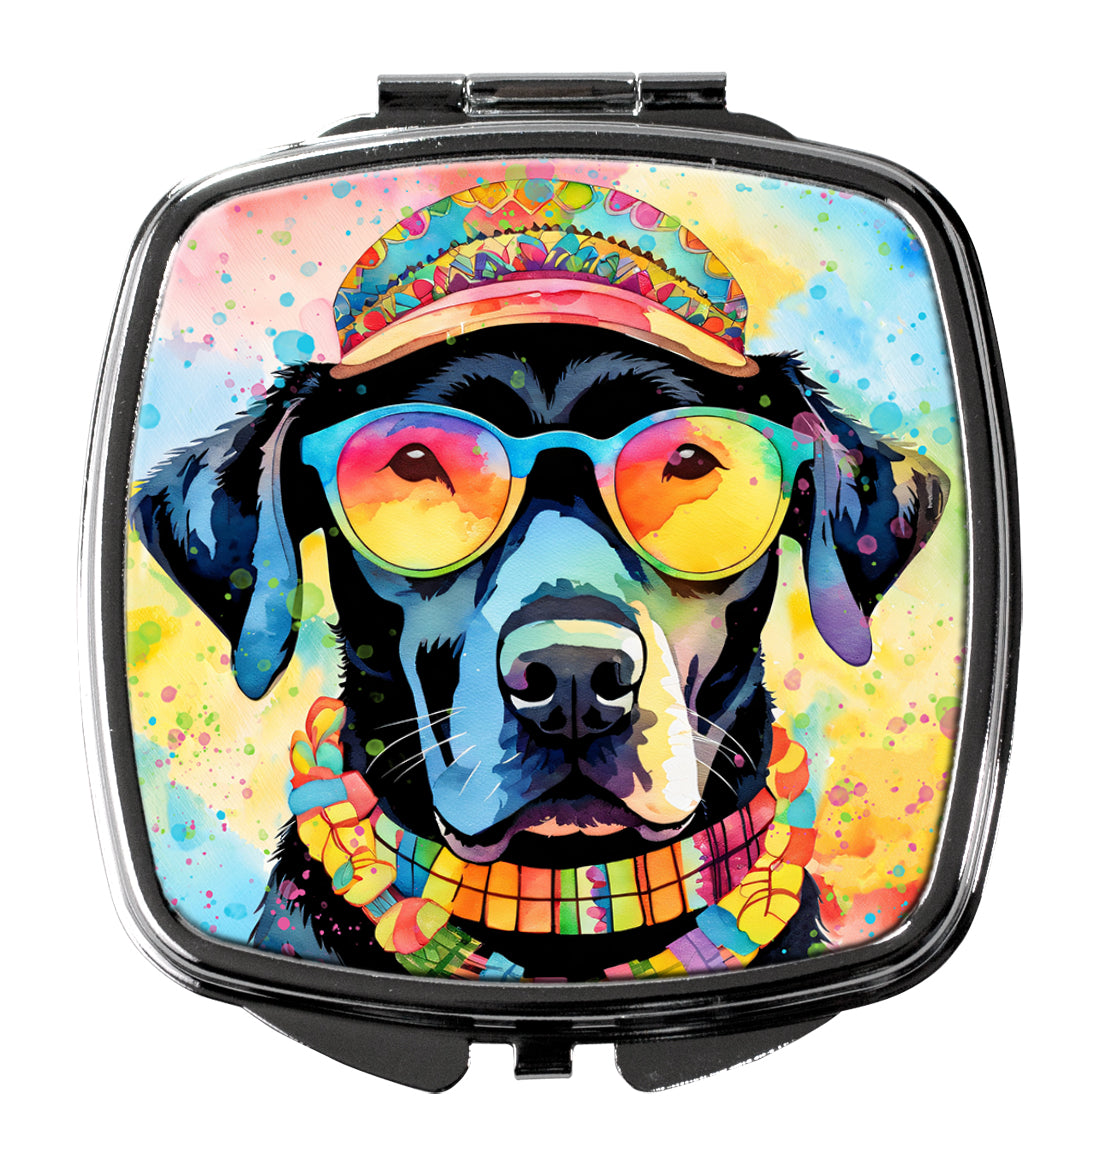 Buy this Black Labrador Hippie Dawg Compact Mirror